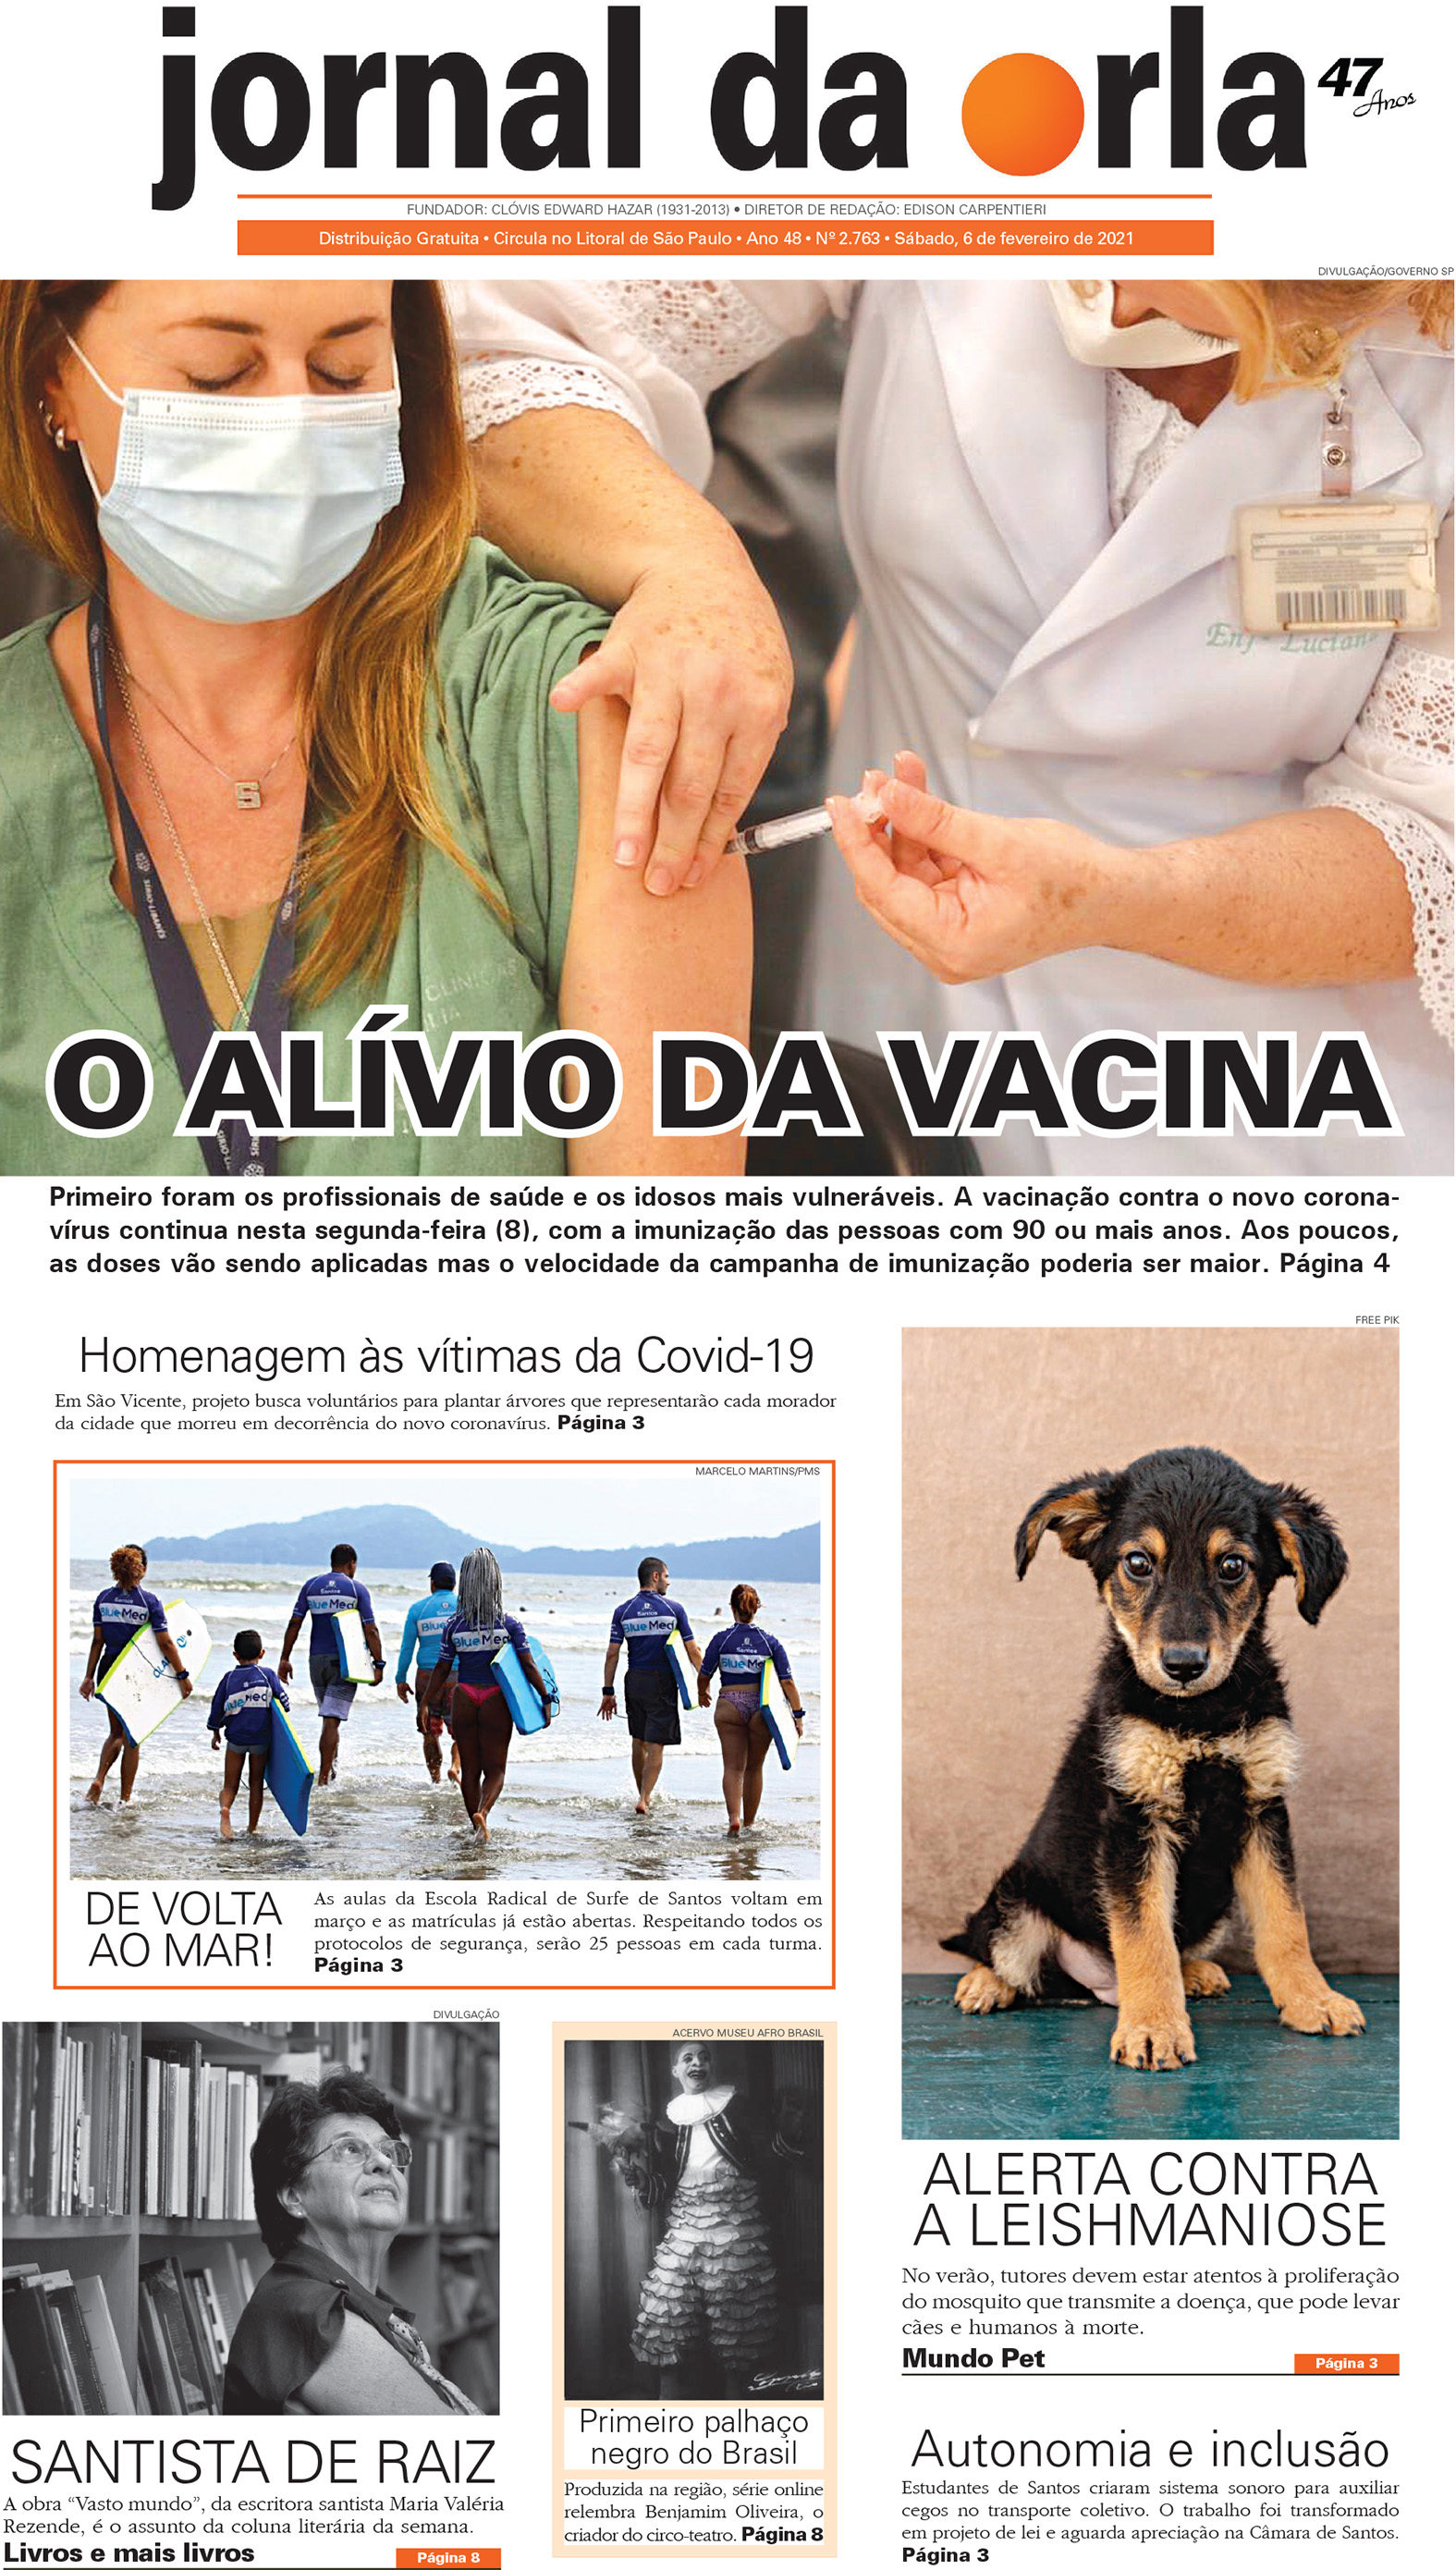 06/02/2021 | Jornal da Orla